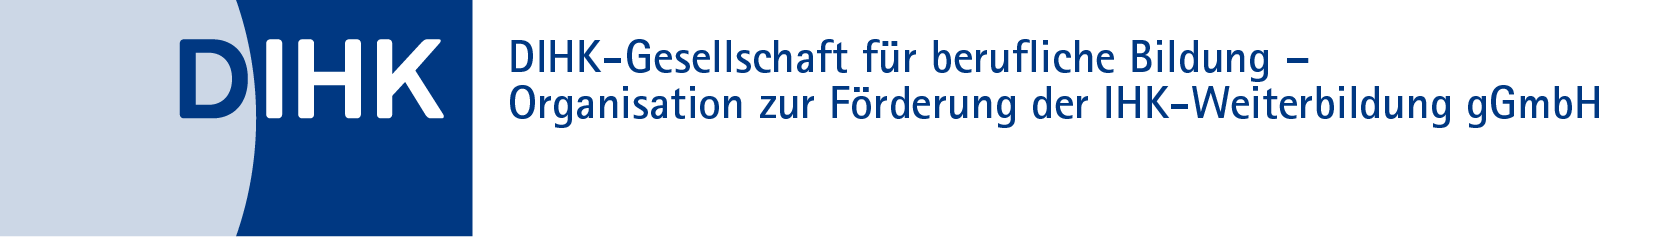 Logo: DIHK - Deutscher Industrie- und Handelskammertag